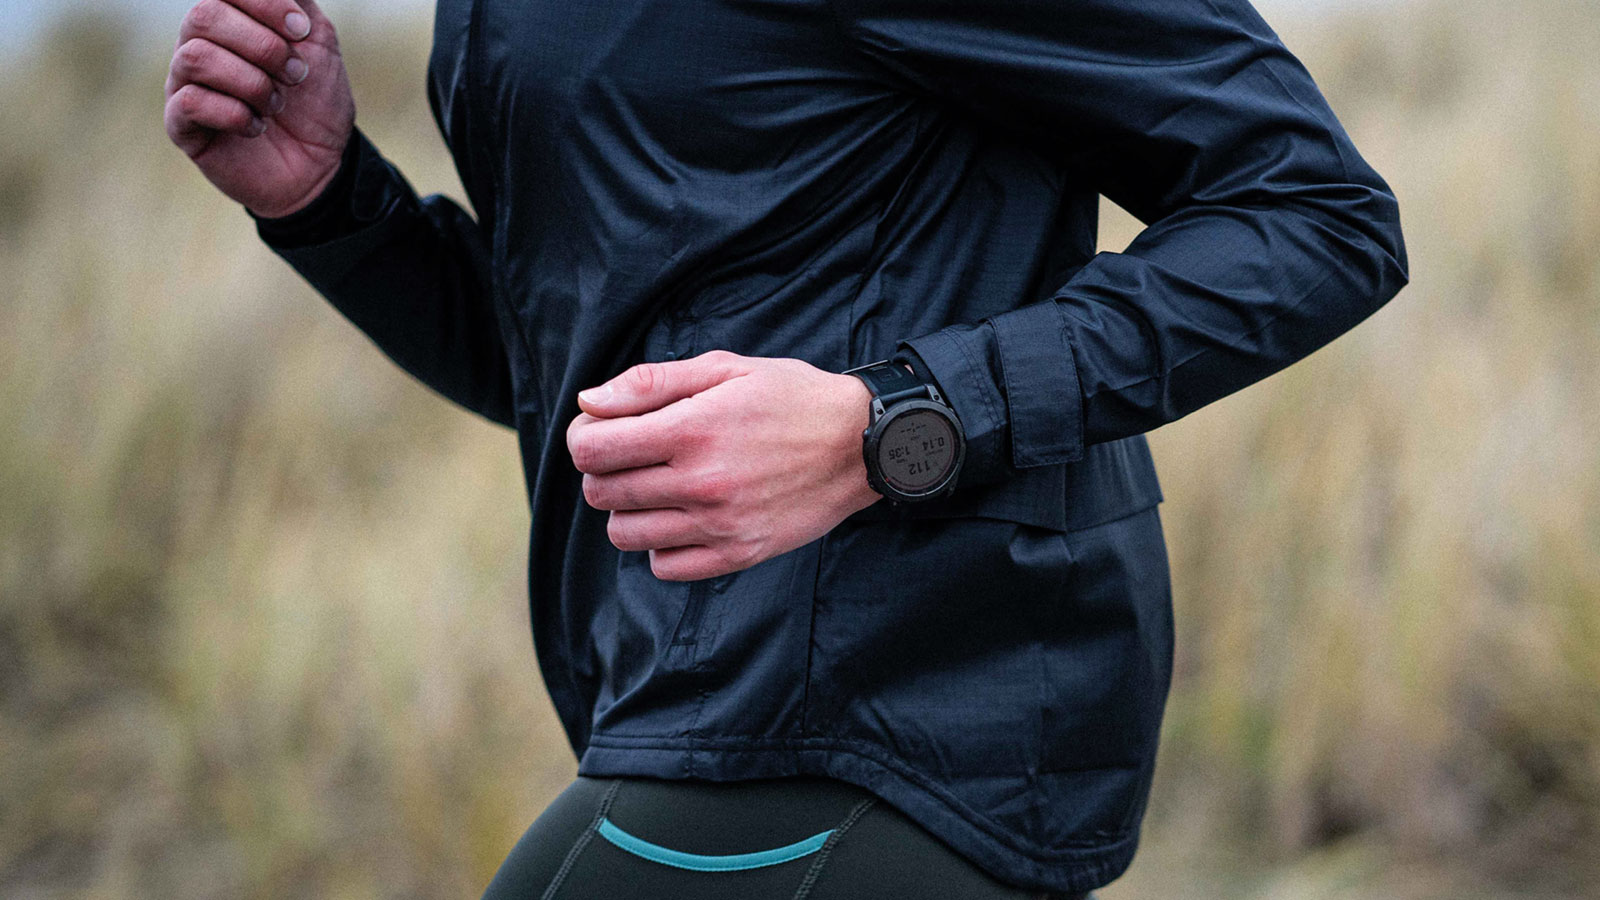 Løber med smartwatch til optimering af løbetræningen